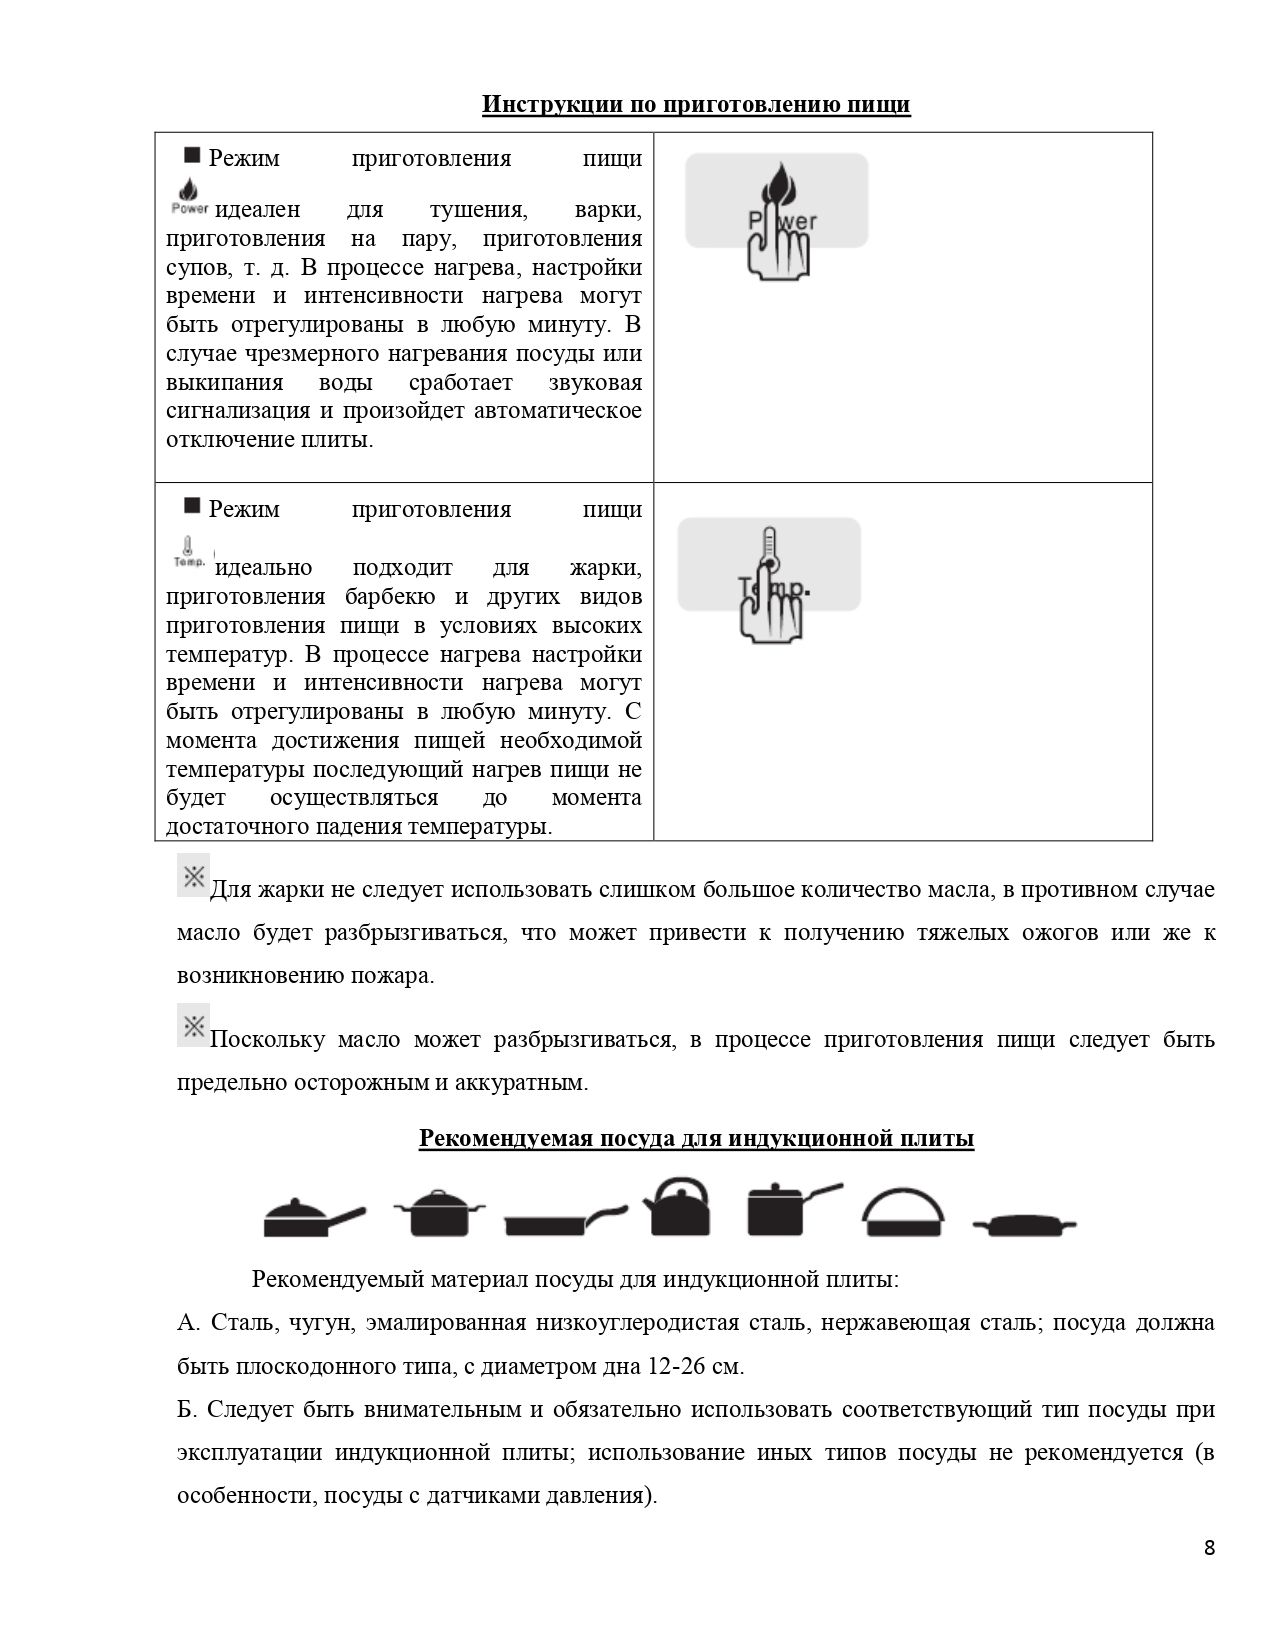 Инструкция к индукционной плите Gastrorag TZ-JDL-C30A1, 3,5 кВт 8.jpg